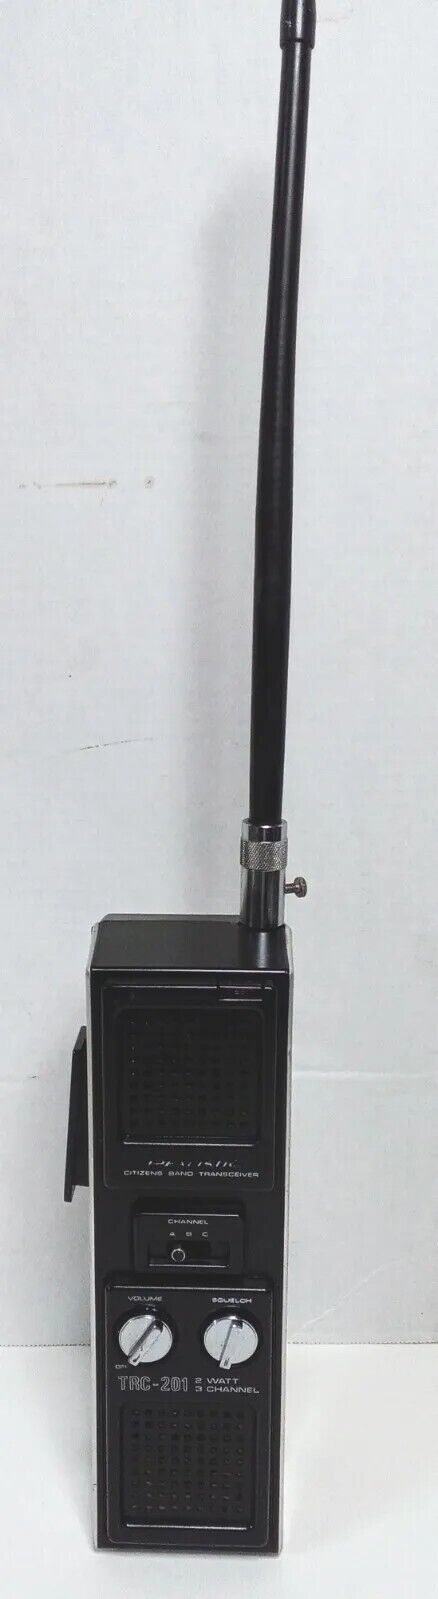 Vintage Great Shape Realistic 2Watt 3 Channel Transceiver Model No. TRC-201...